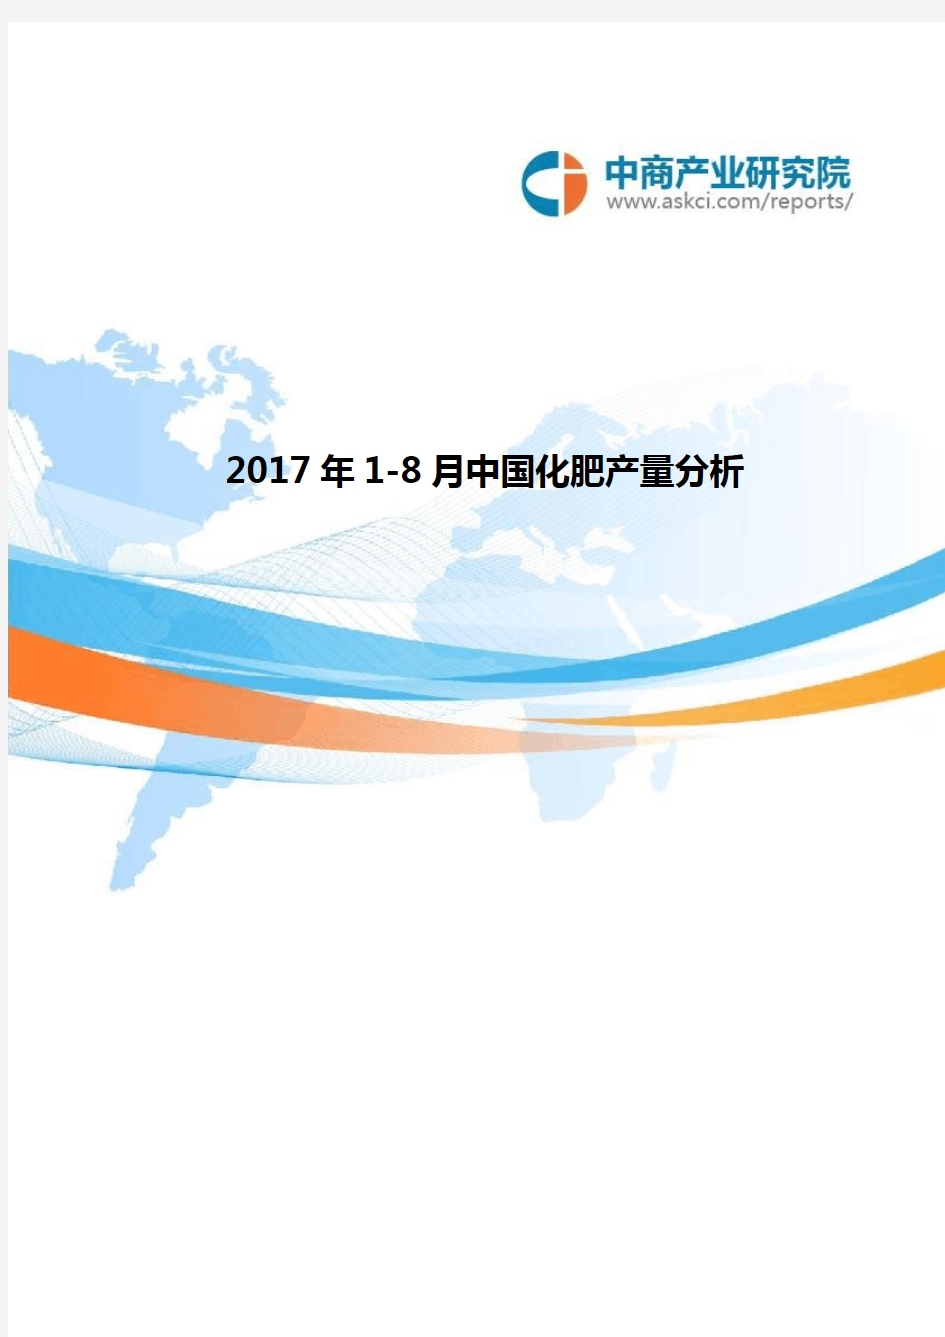 2017年中国化肥产量分析(1-8月)